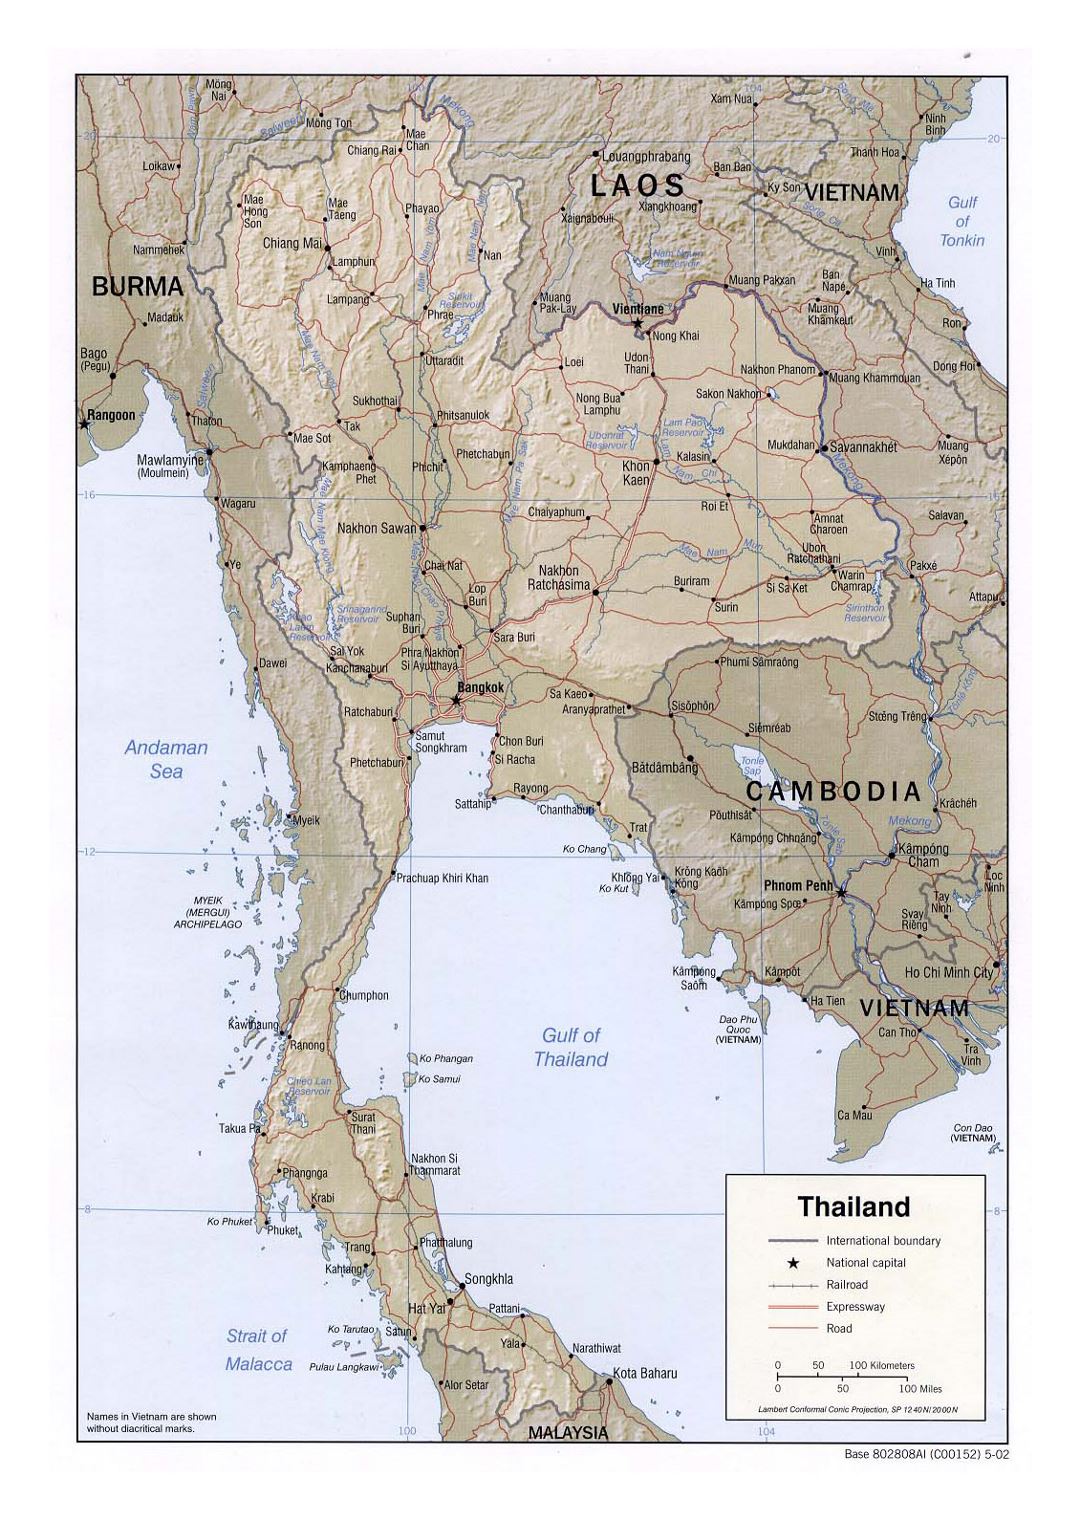 Detallado mapa político de Tailandia con socorro, carreteras, railorads y grandes ciudades - 2002